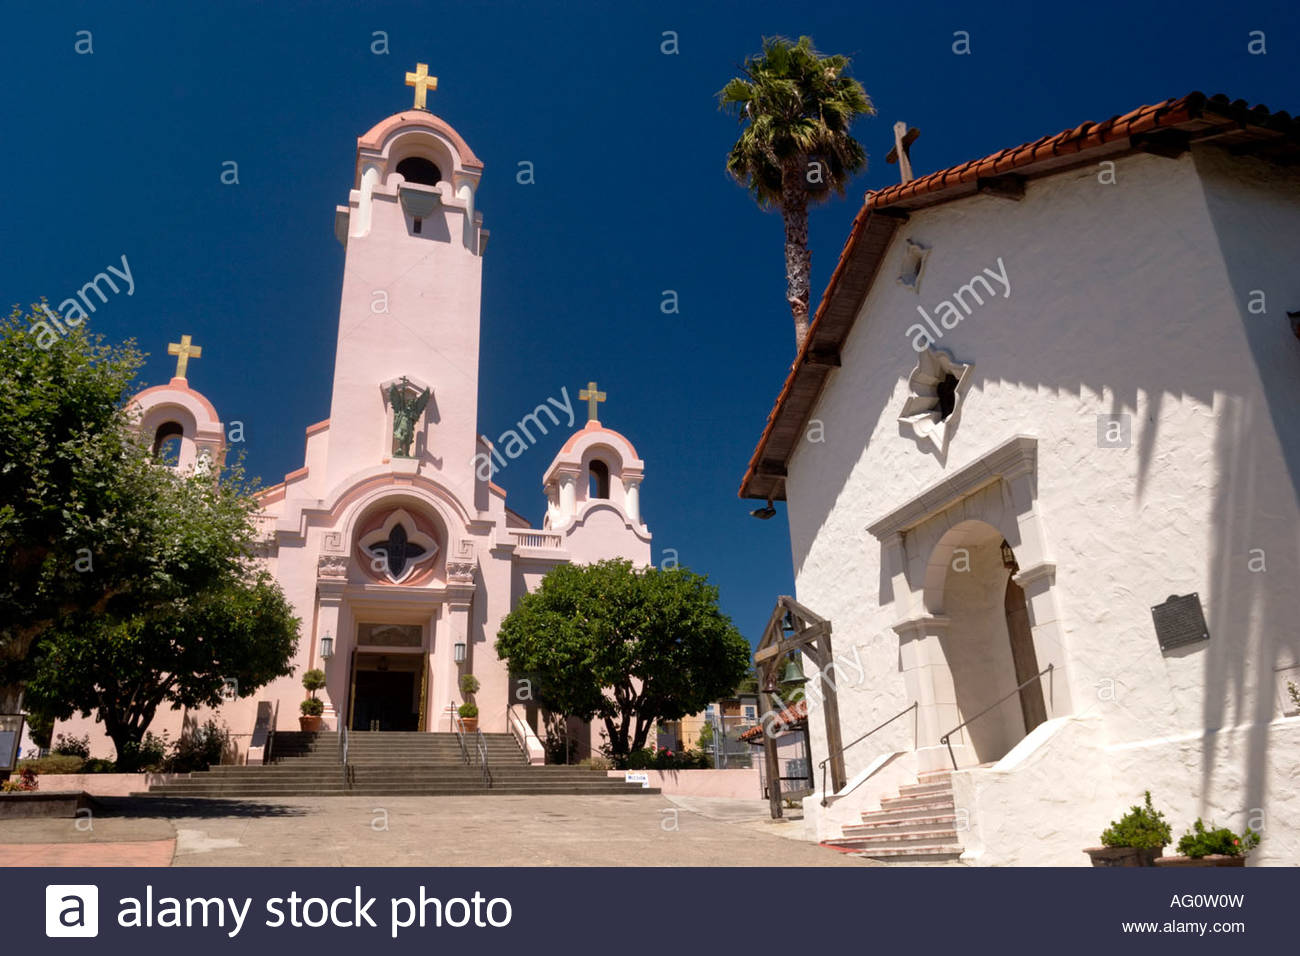 mission-san-rafael-arcangel-california-A